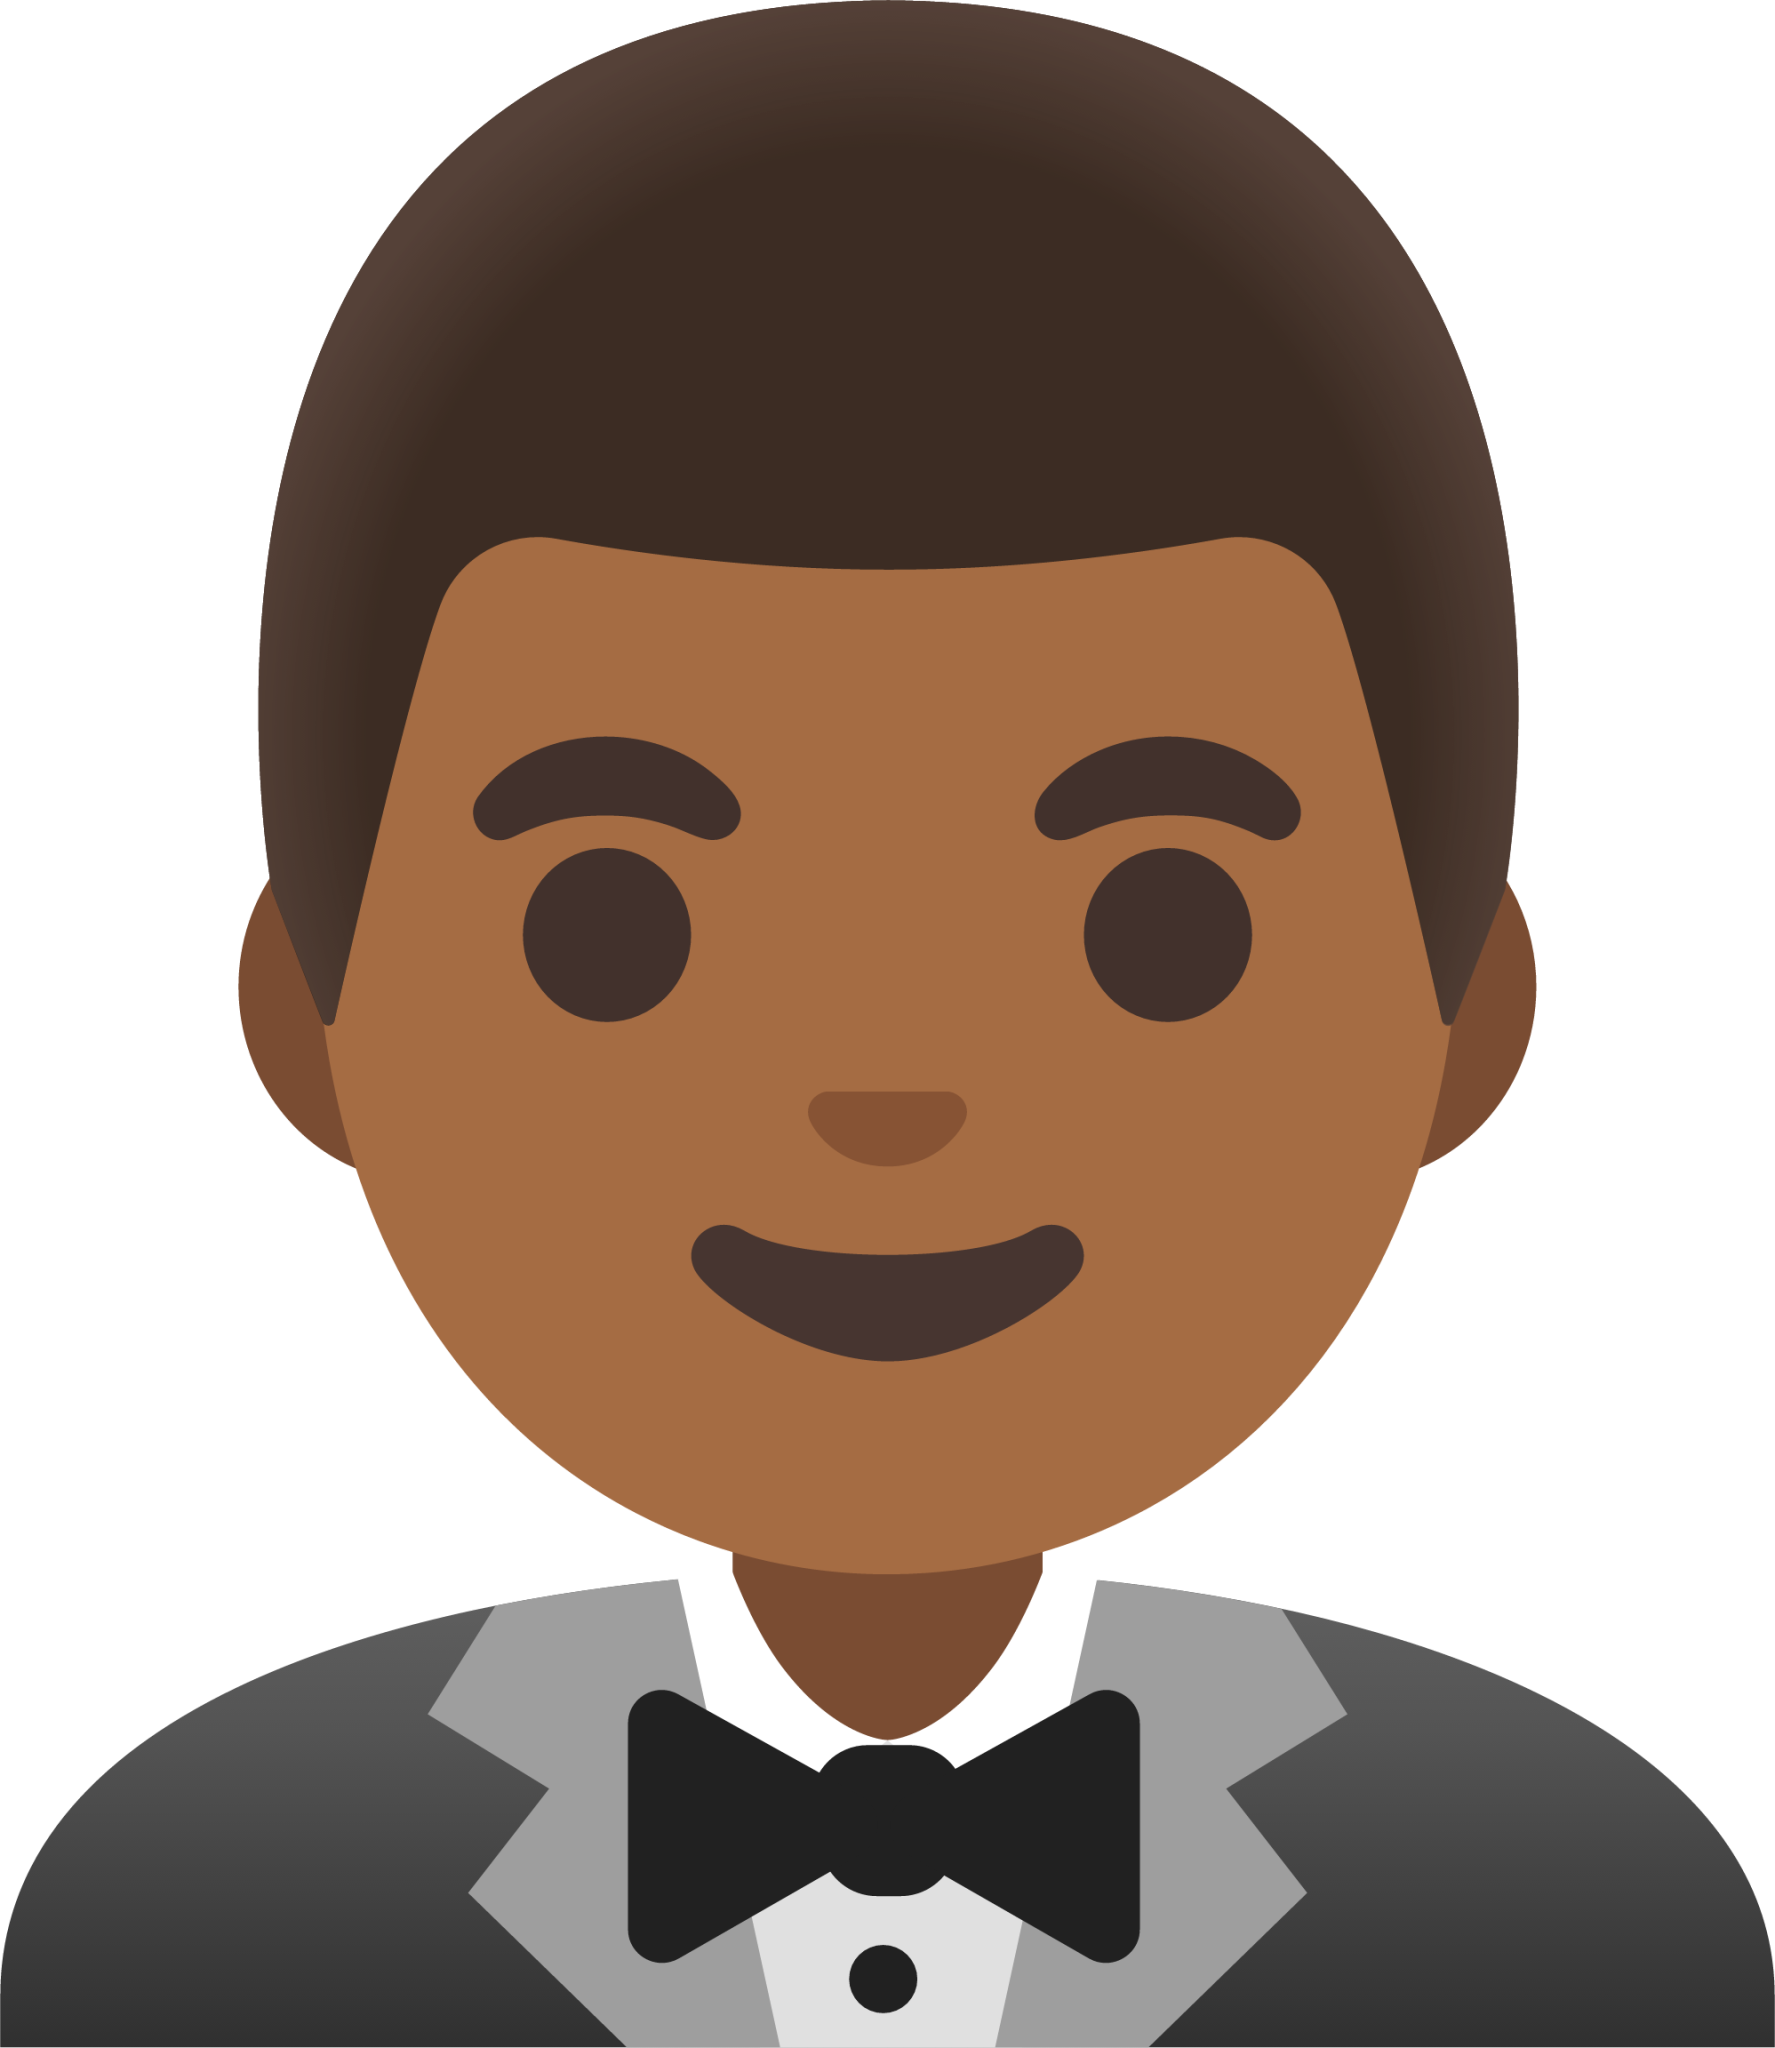 man in tuxedo: medium-dark skin tone emoji